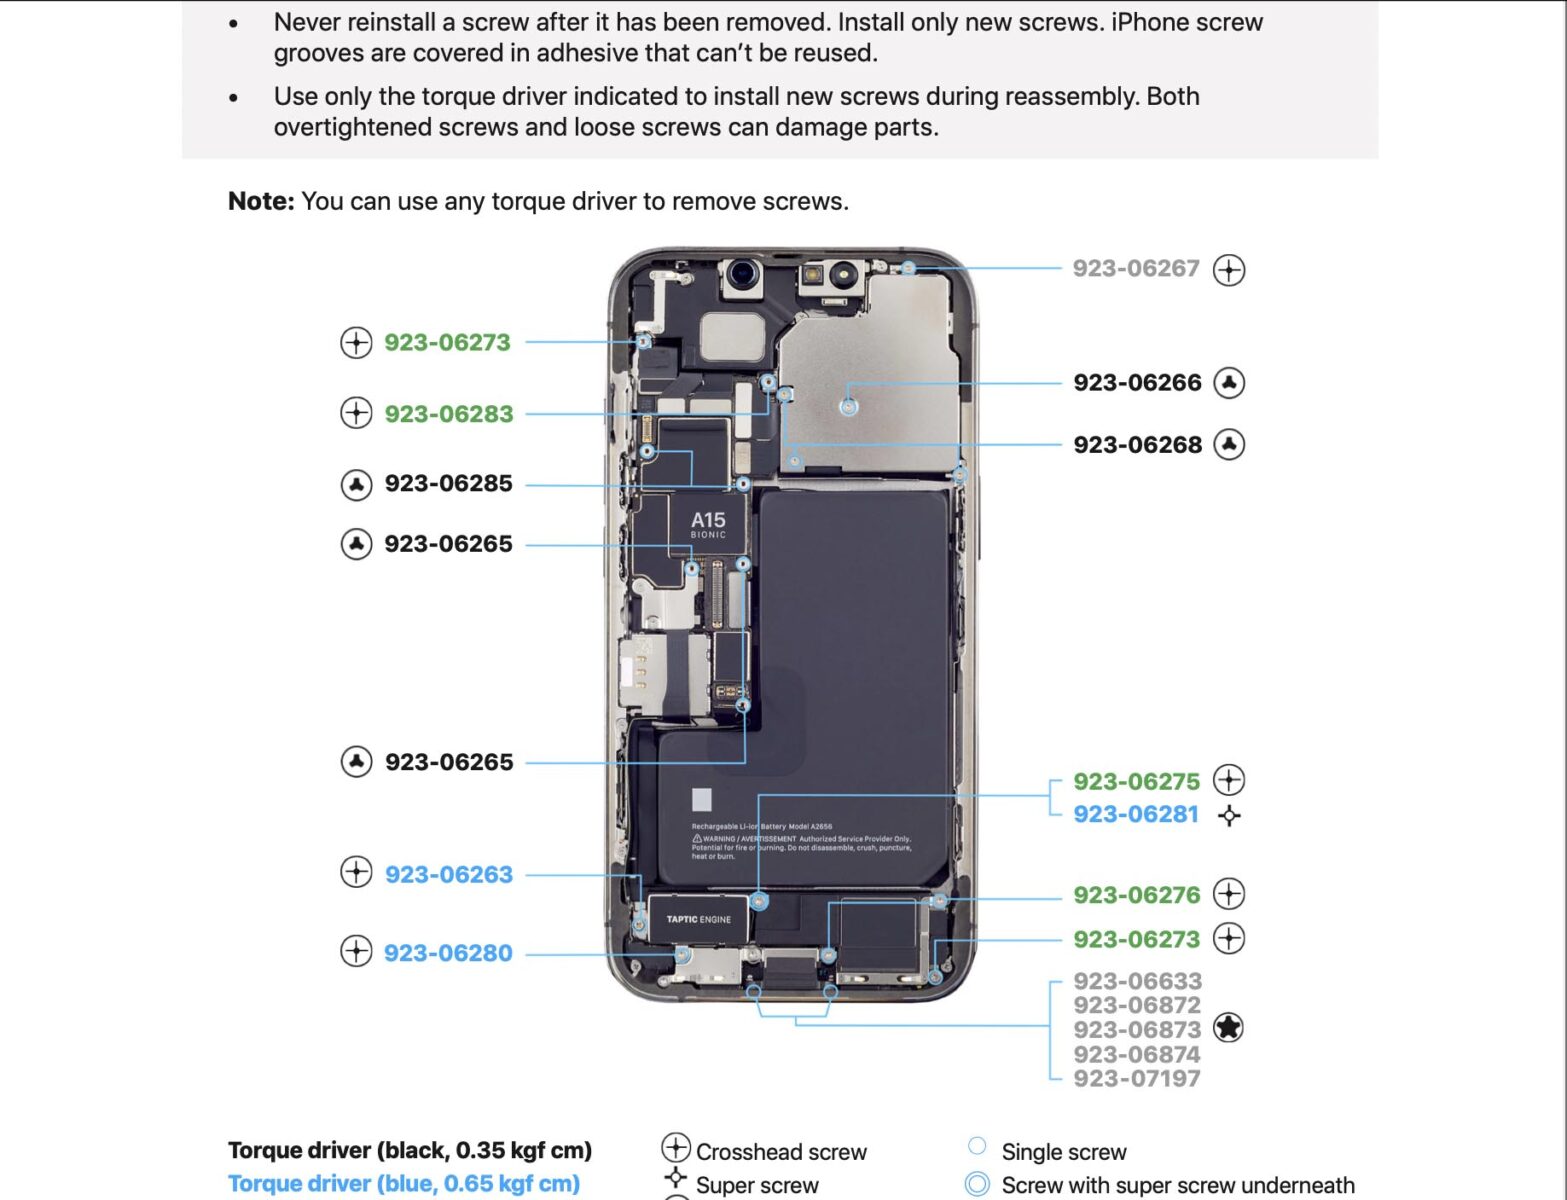 Scaricare i manuali ufficiali per riparare gli iPhone